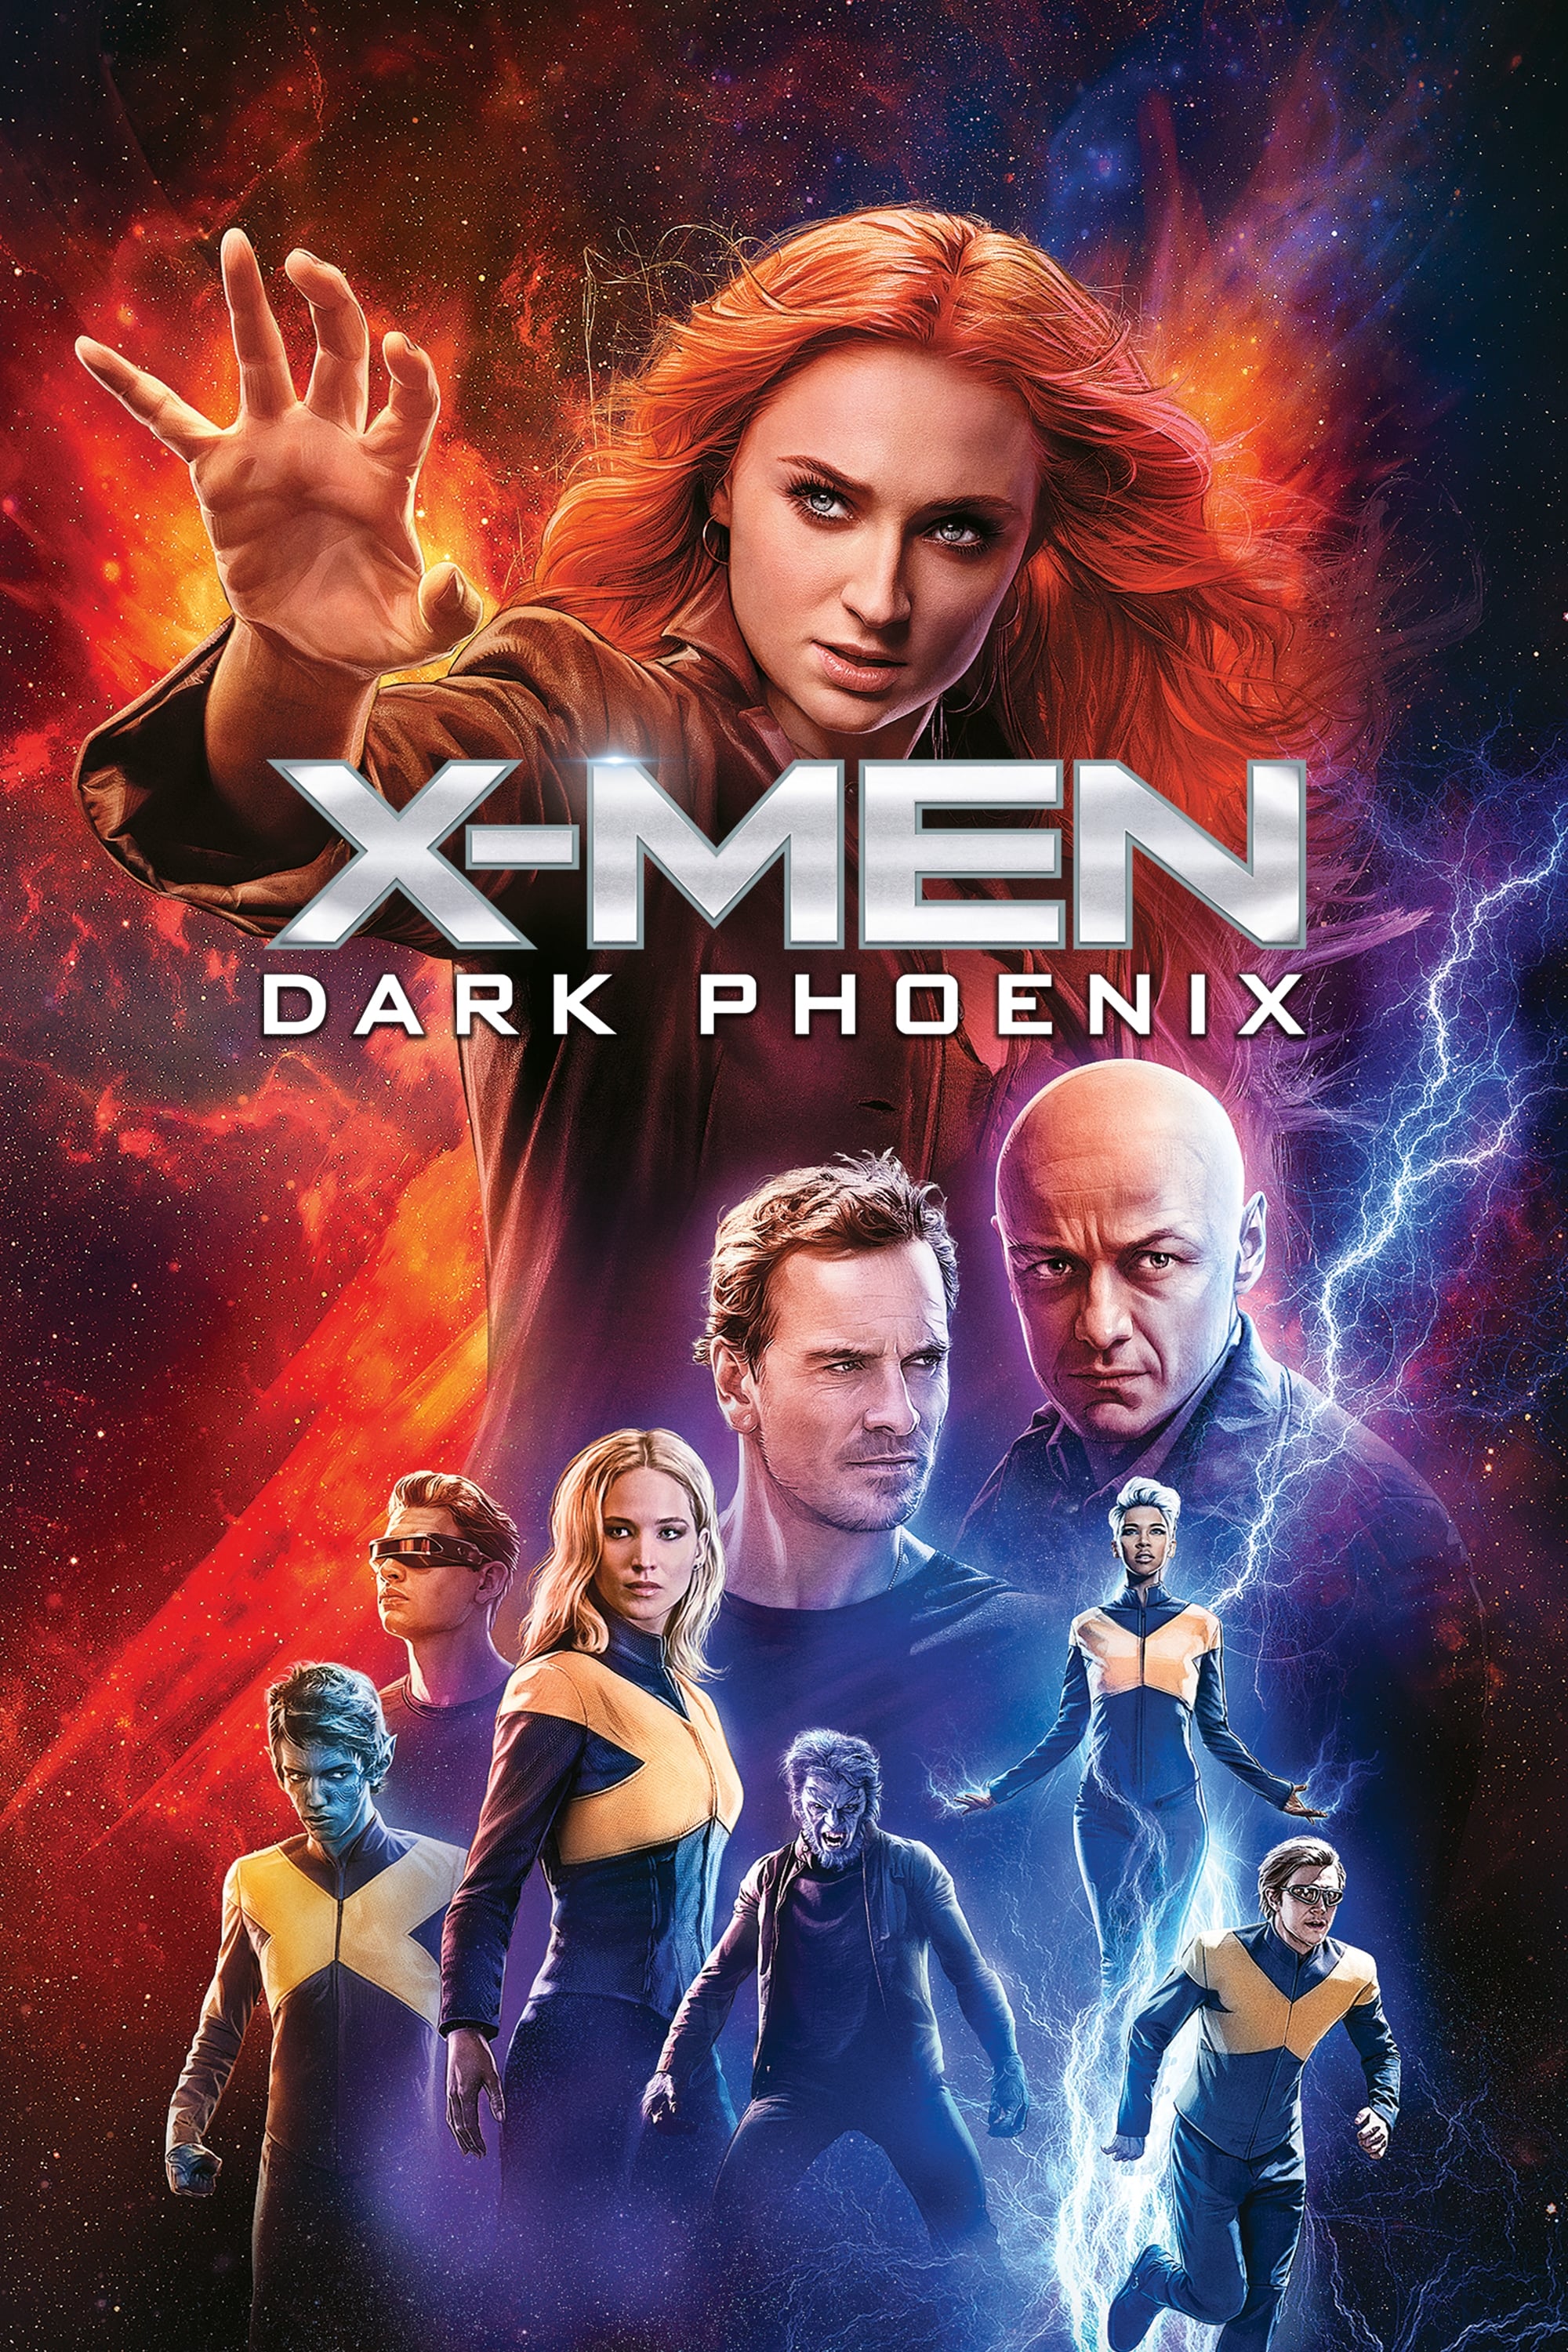 X-Men: Fénix oscura (2019)